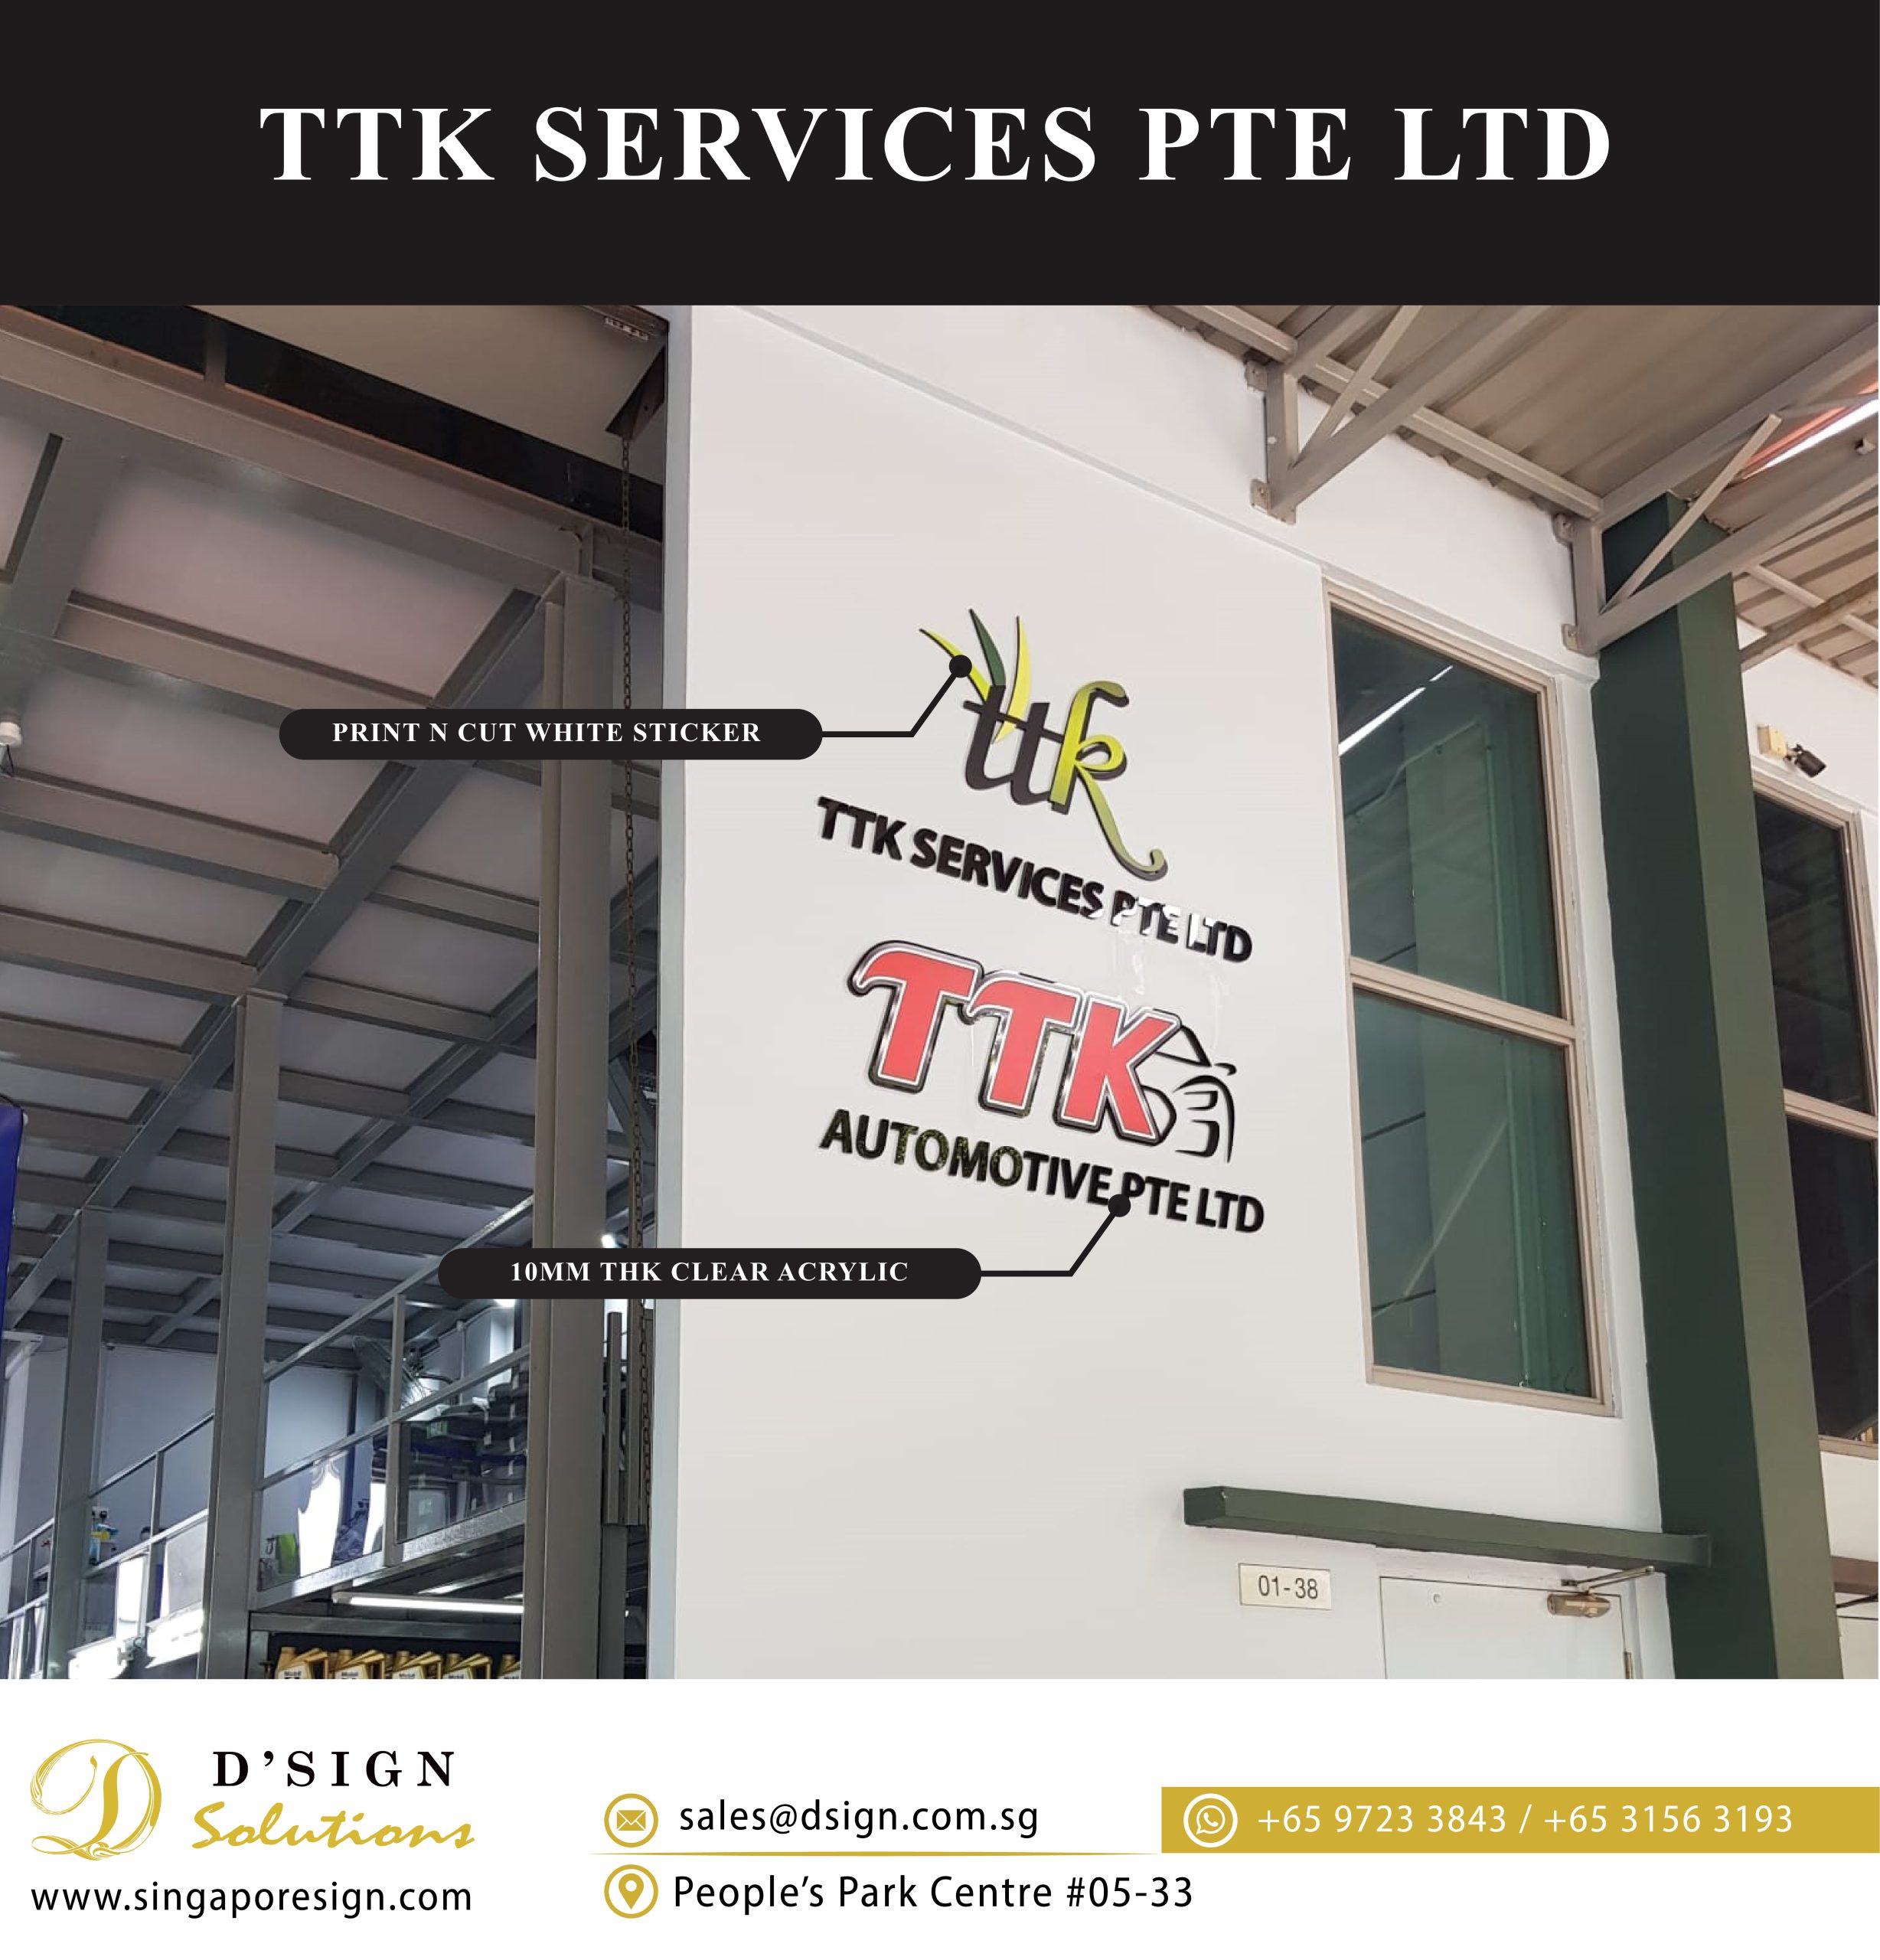 TTK SERVICES PTE LTD